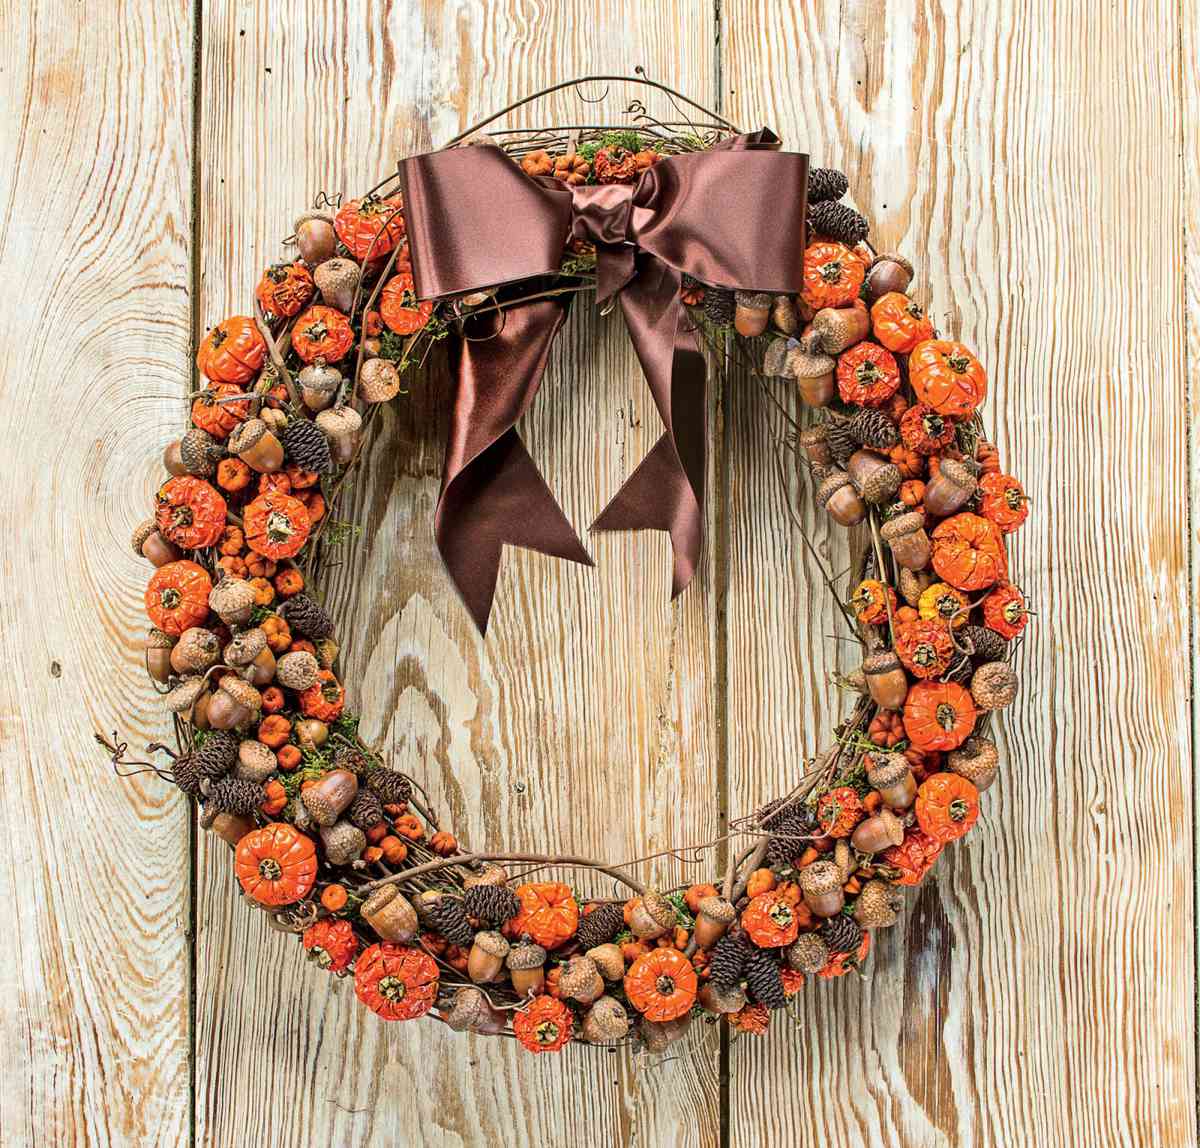 "Pumpkins" and Acorns Fall Wreath